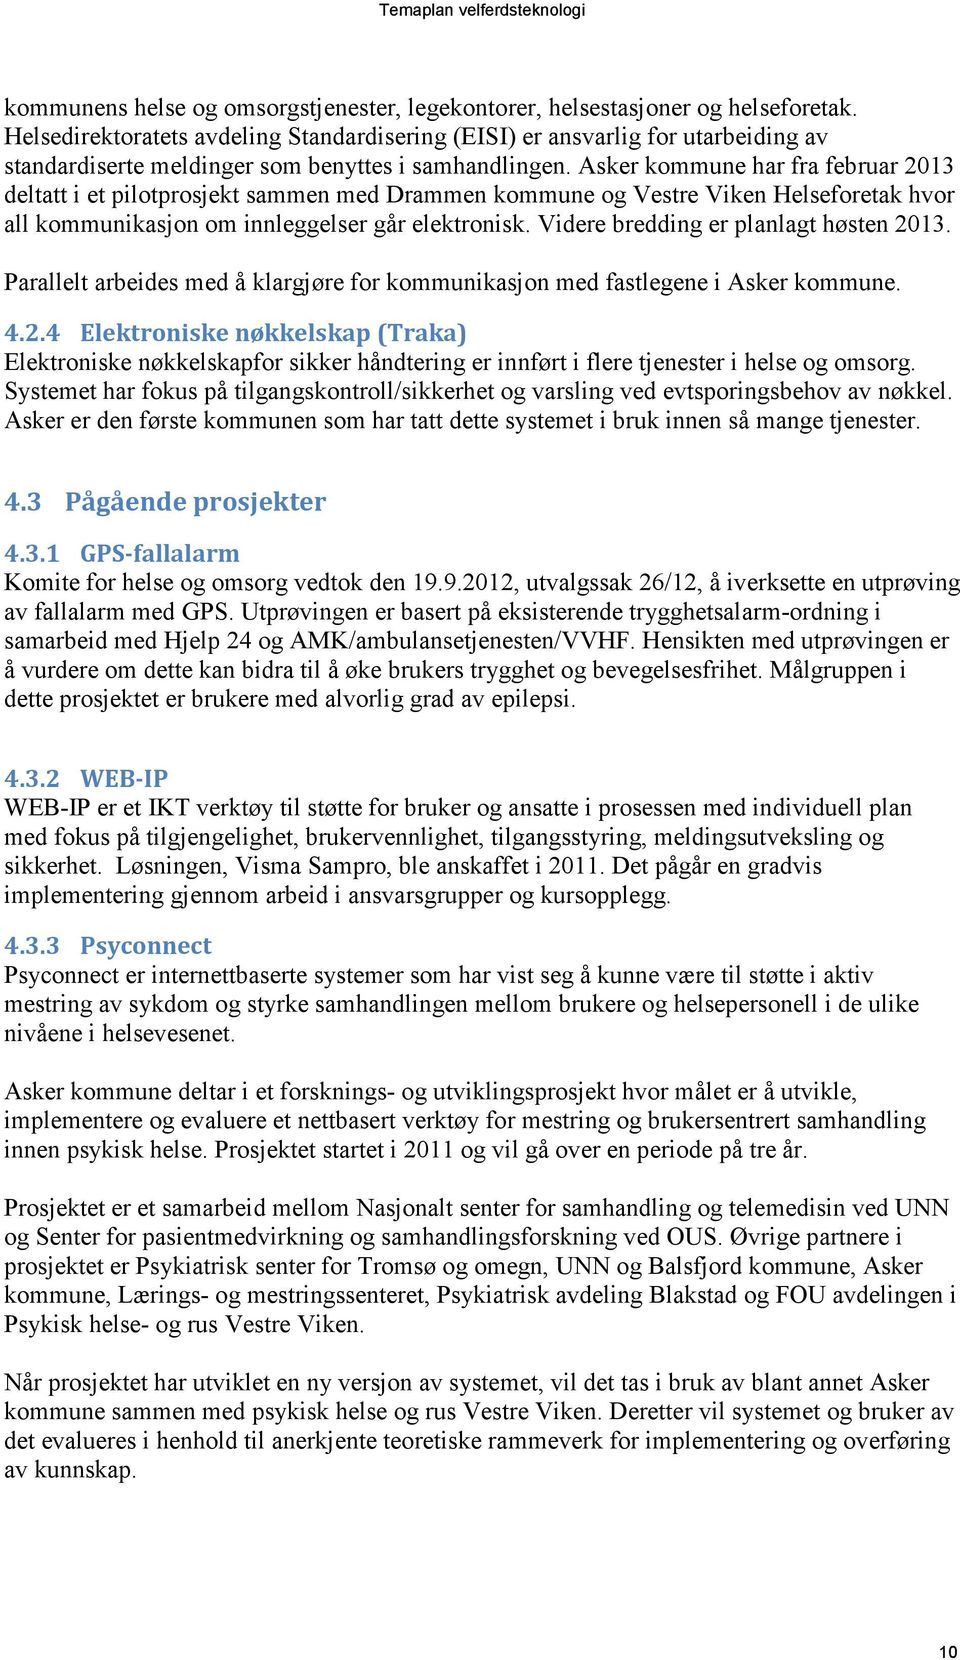 Asker kommune har fra februar 2013 deltatt i et pilotprosjekt sammen med Drammen kommune og Vestre Viken Helseforetak hvor all kommunikasjon om innleggelser går elektronisk.